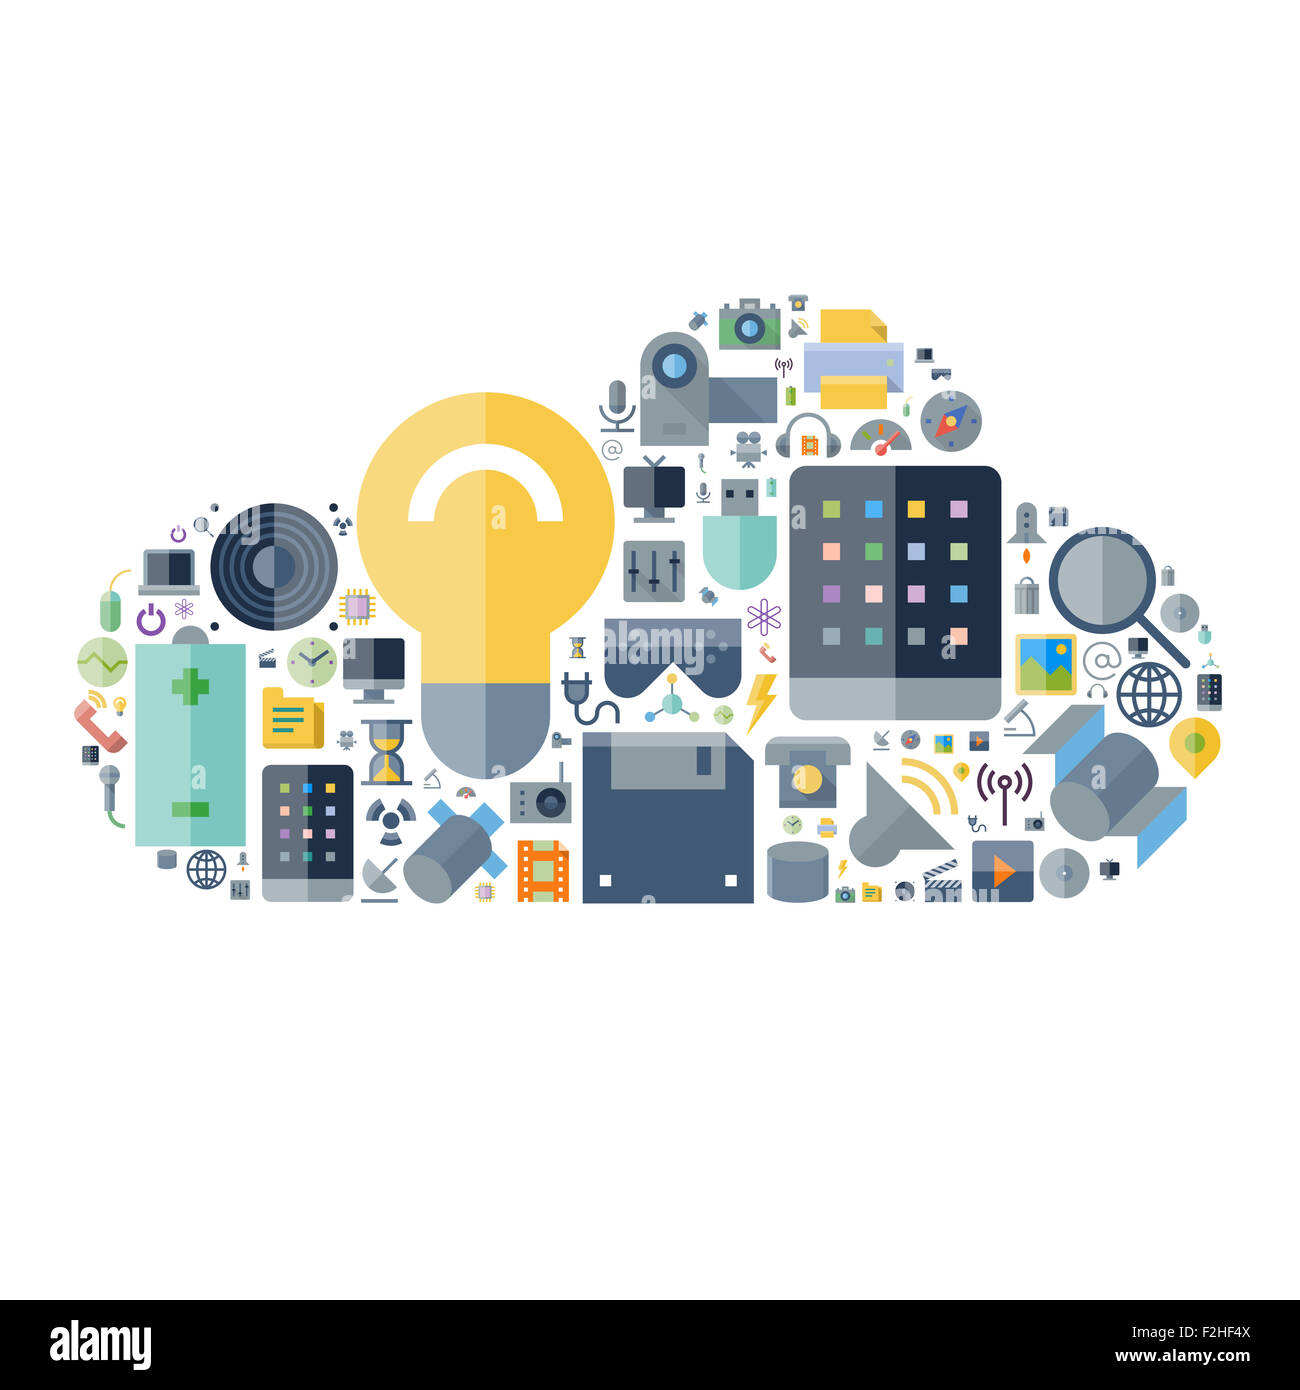 Symbole für Technologie und elektronischen Geräten in Cloud-Form angeordnet. Stockfoto